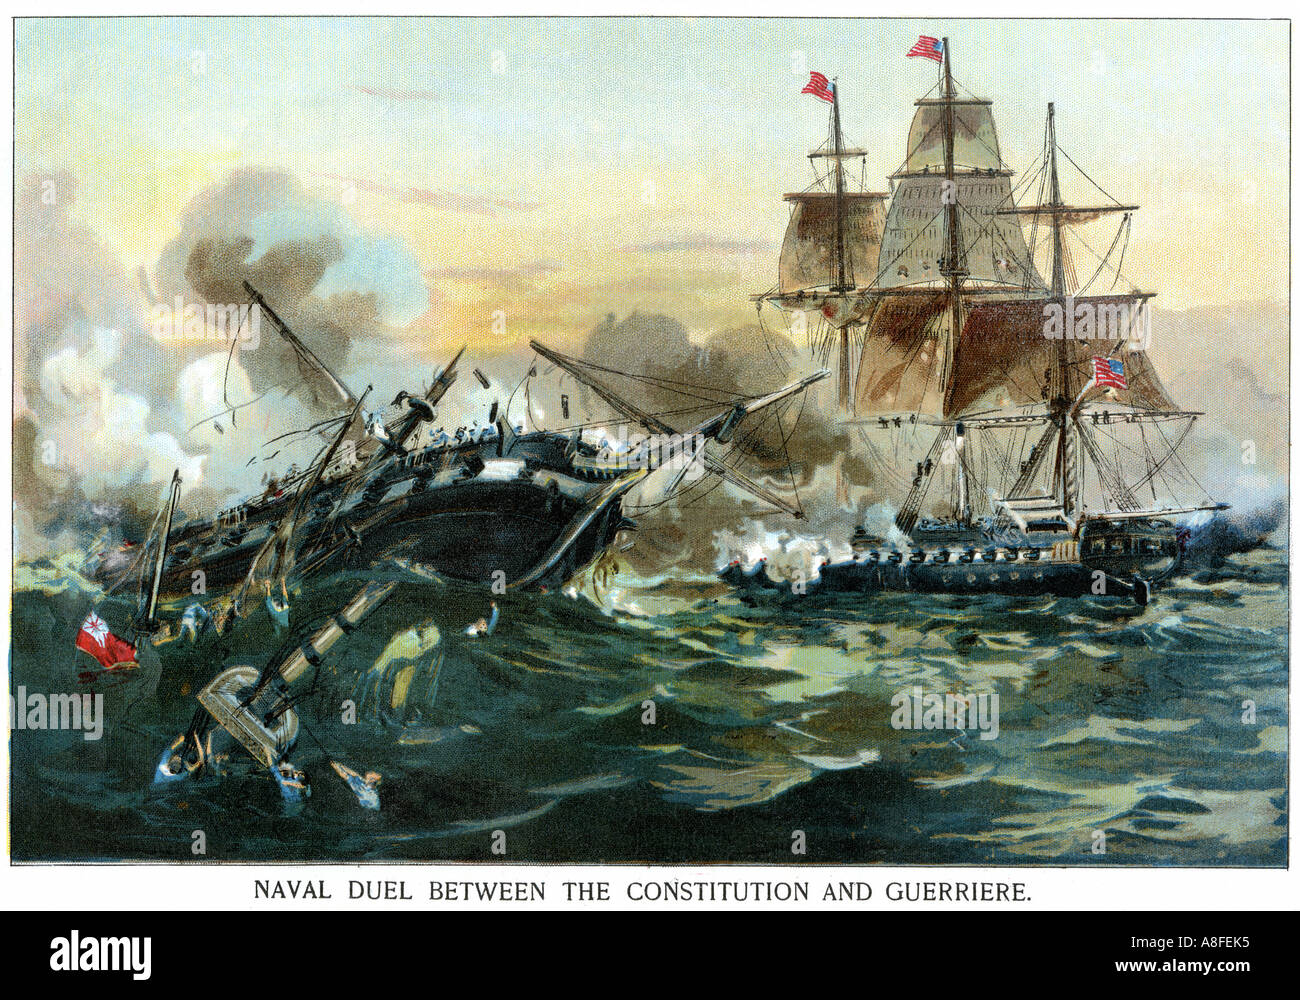 Seeschlacht zwischen der Fregatte USS Constitution und die britische Schiff Guerriere im Krieg von 1812. Farblithographie Stockfoto